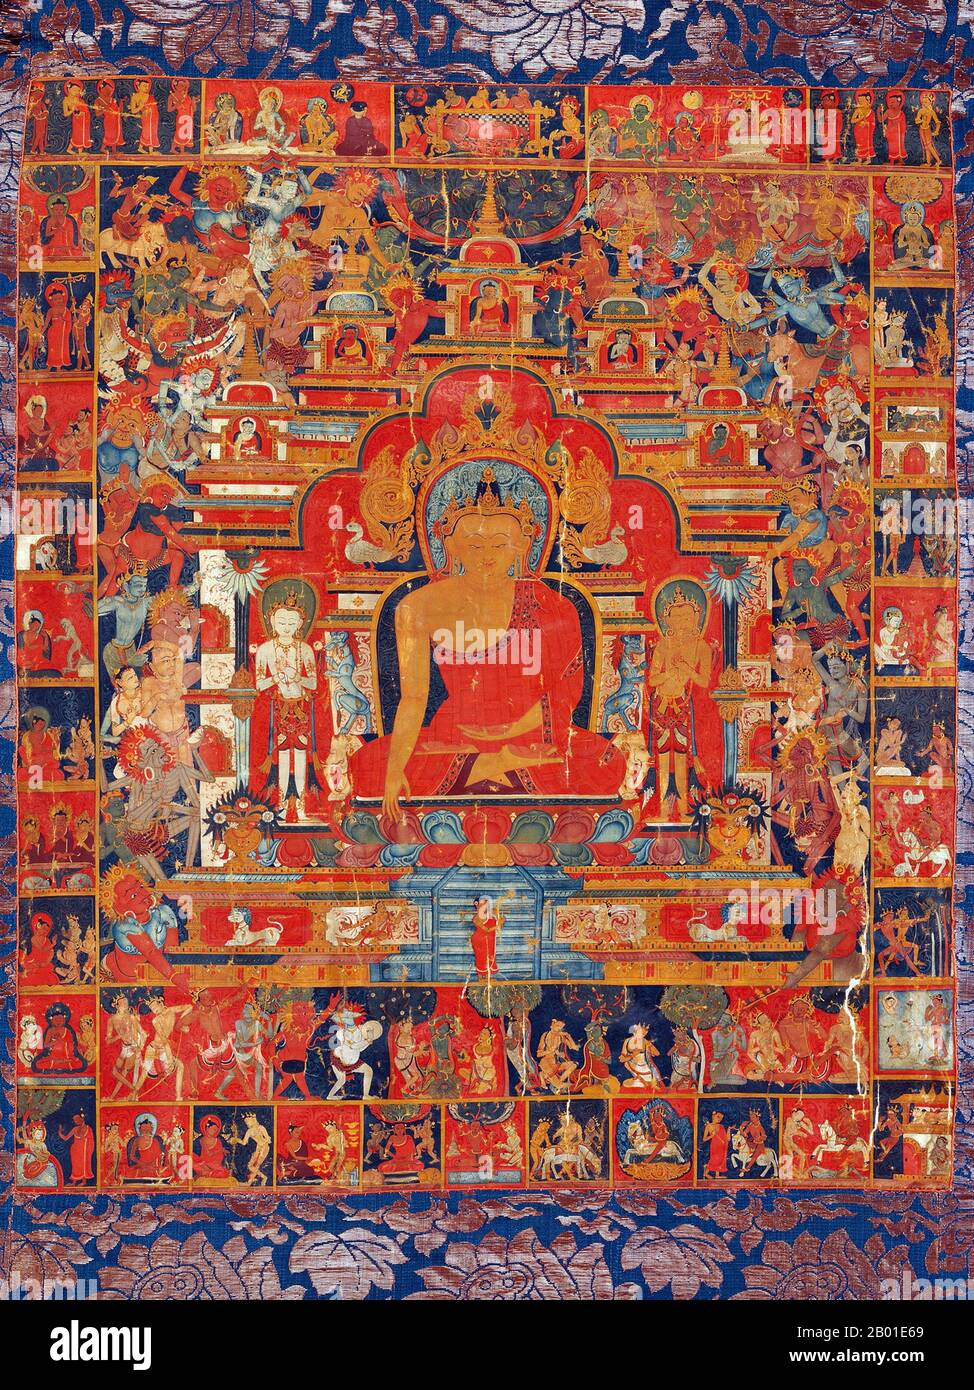 Tibet/Cina: Dipinto di Thangka con scene della vita del Buddha Sakyamuni, Lhasa, 14th° secolo. Siddhārtha Gautama (sanscrito: सिद्धार्थ गौतम; Pali: Siddhattha Gotama) fu un insegnante spirituale dell'antica India che fondò il buddismo. Nella maggior parte delle tradizioni buddhiste, egli è considerato come il Buddha supremo (P. sammāsambuddha, S. samyaksaṃbuddha) della nostra epoca, 'Buddha' che significa 'risvegliato uno' o 'illuminato uno'. Il momento della sua nascita e della sua morte sono incerti: La maggior parte degli storici del 20th ° secolo datato la sua vita come c. 563 a.C. a 483 a.C., ma l'opinione più recente data la sua morte a tra il 486-483 a.C.. Foto Stock